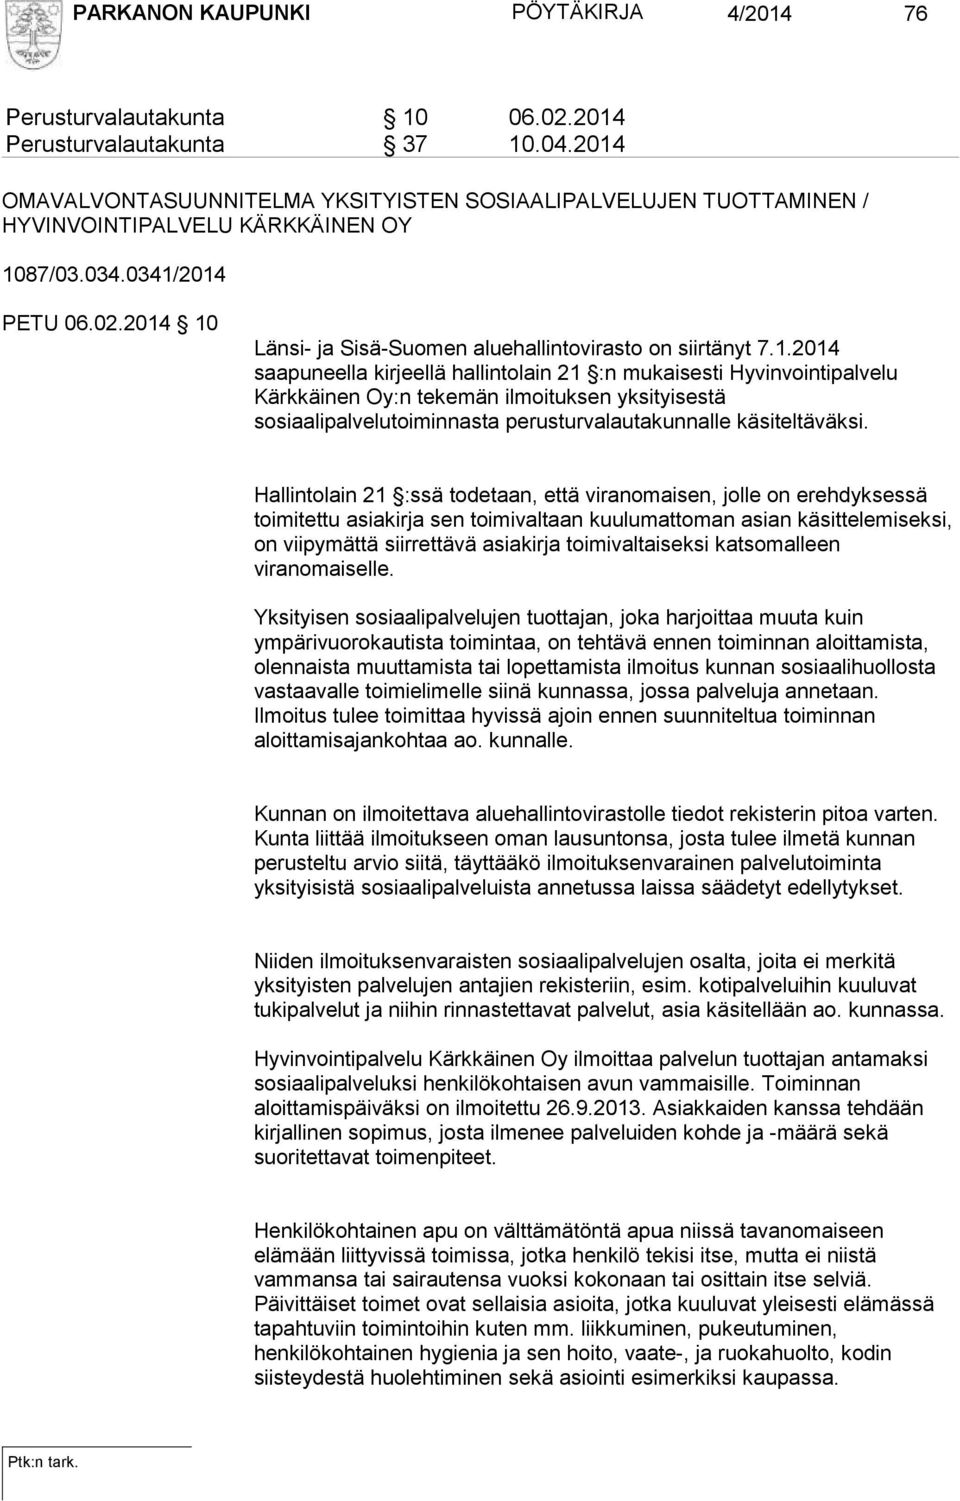 2014 10 Länsi- ja Sisä-Suomen aluehallintovirasto on siirtänyt 7.1.2014 saapuneella kirjeellä hallintolain 21 :n mukaisesti Hyvinvointipalvelu Kärkkäinen Oy:n tekemän ilmoituksen yksityisestä sosiaalipalvelutoiminnasta perusturvalautakunnalle käsiteltäväksi.